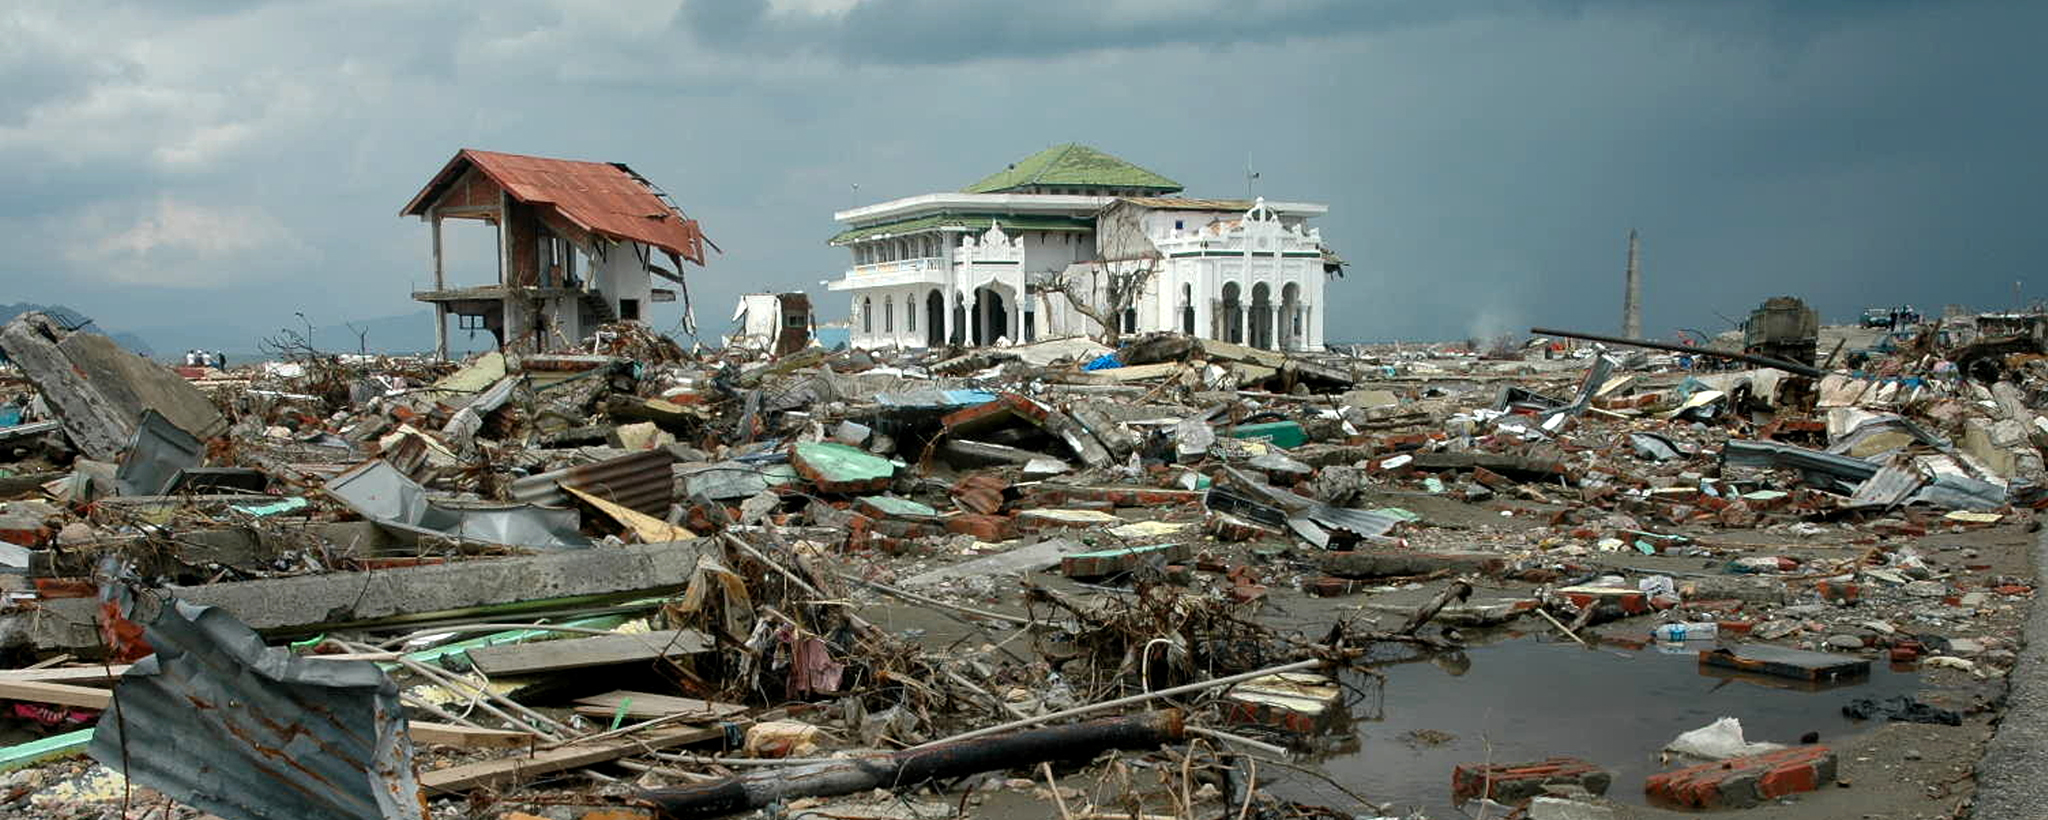 tsunami damage